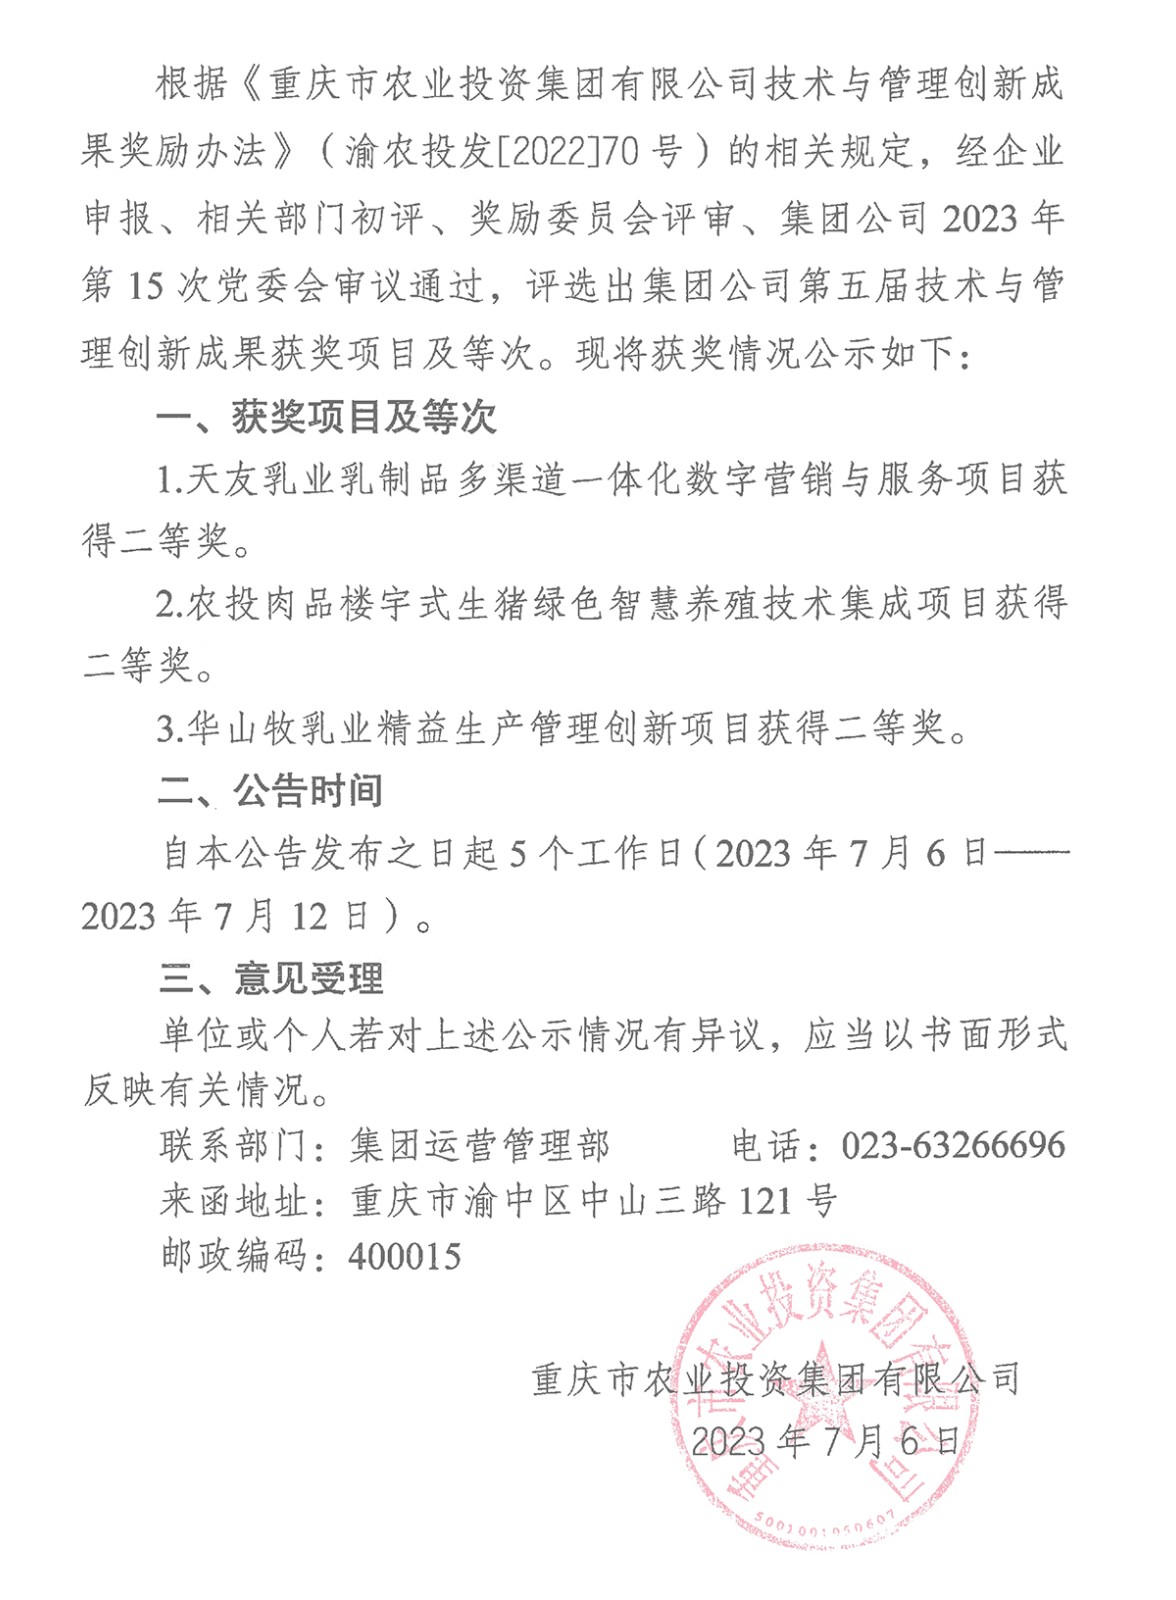 070615442100_0香港正版全年资料关于2023年第五届技术与管理创新成果评选奖励有关情况的公告_1.Jpeg